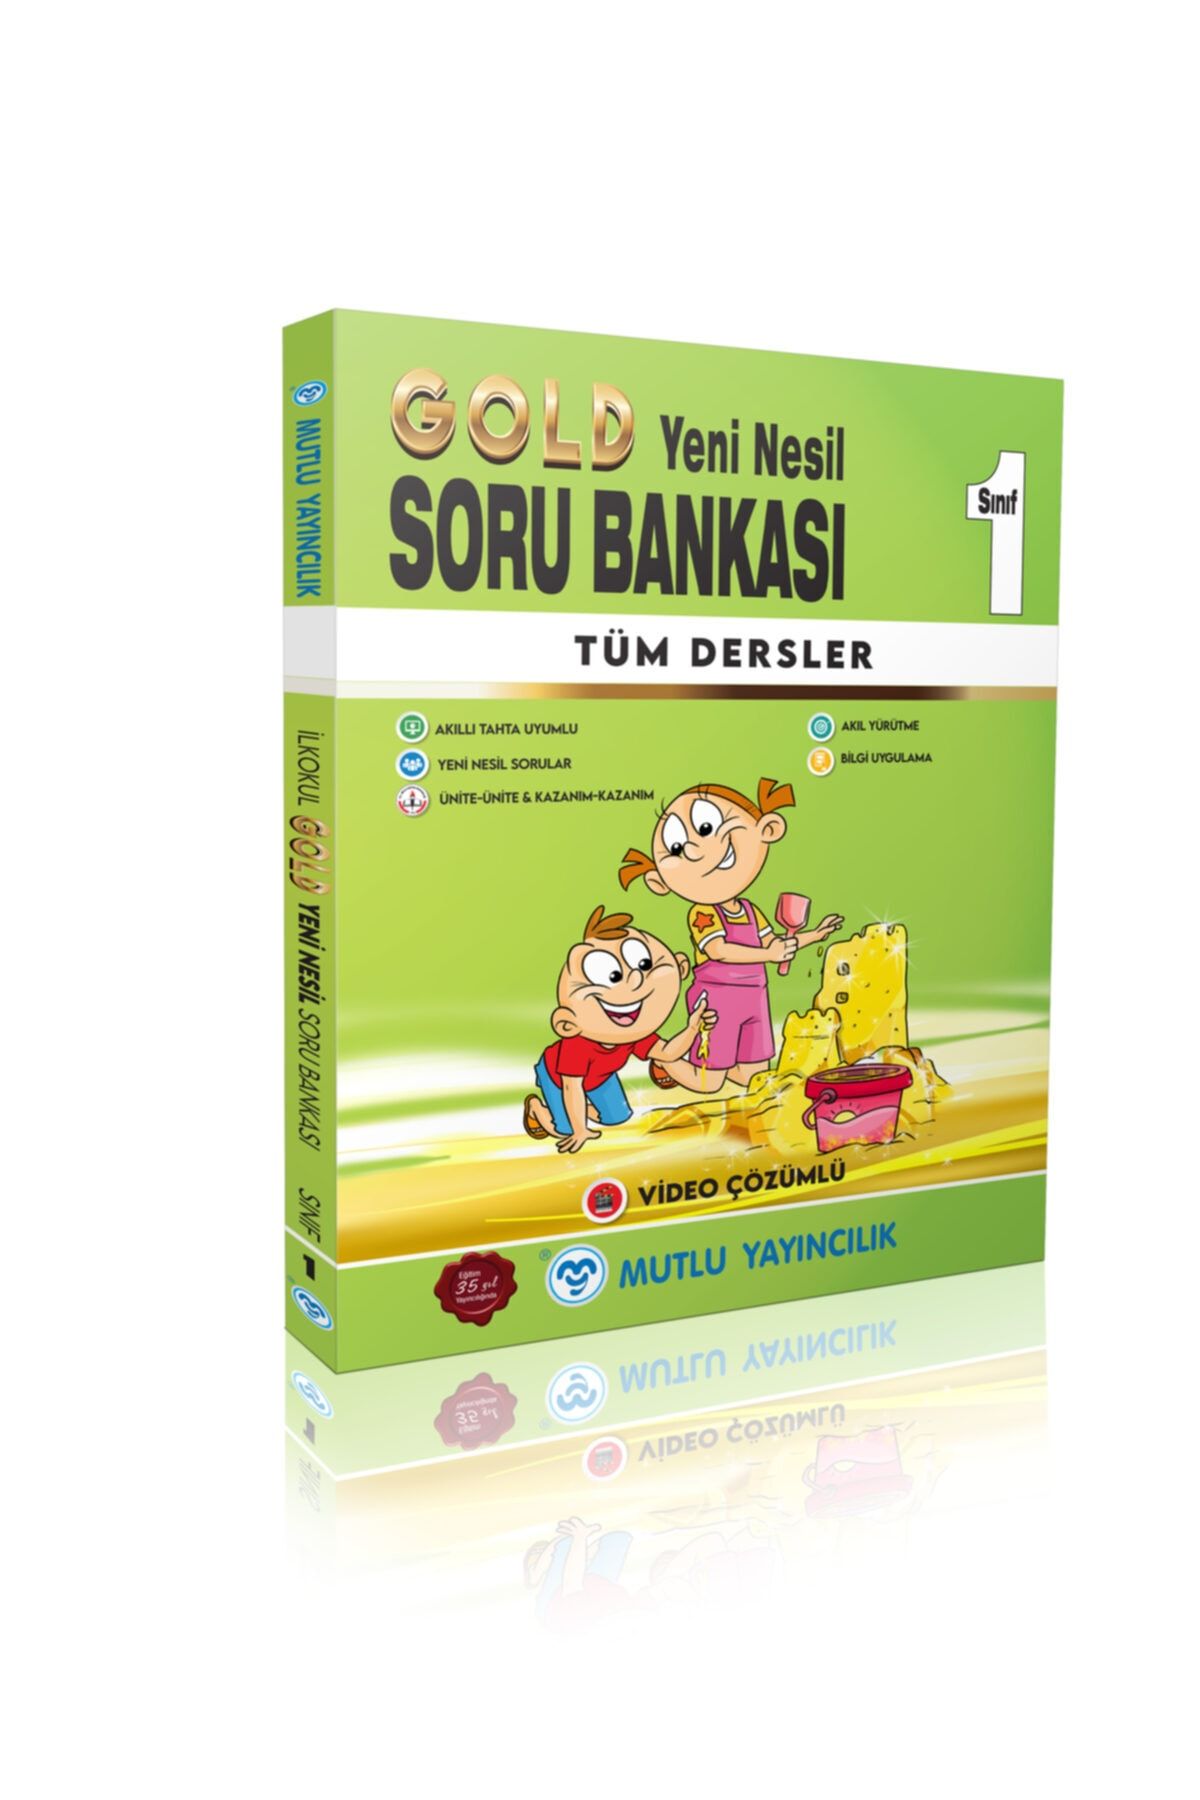 Mutlu Yayıncılık Mutlu Gold Yeni Nesil Soru Bankası 1 Yeni Ürün !!.